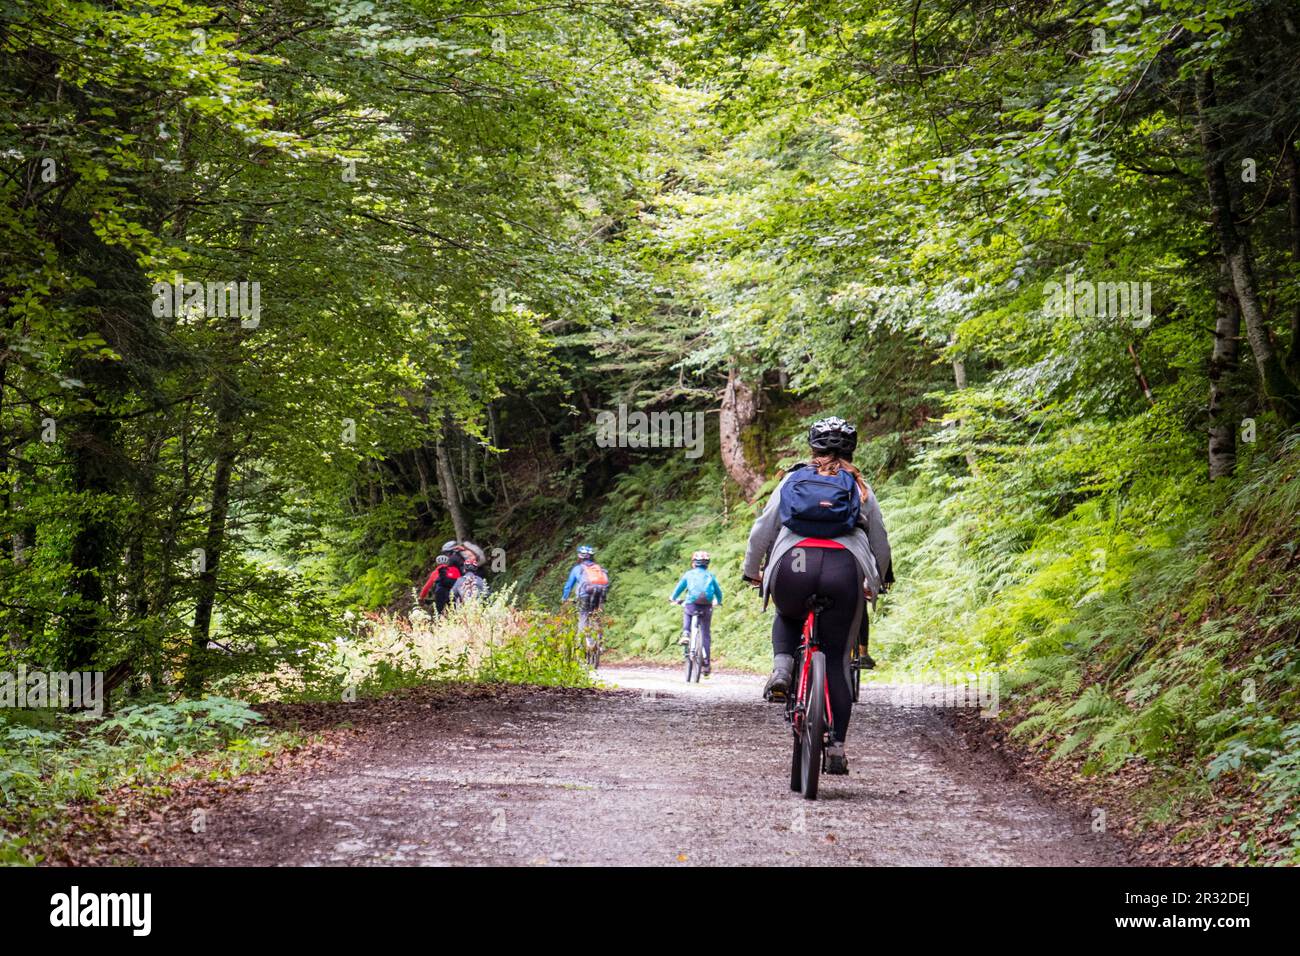 escursion juvenil en bicicleta de montaña, pista de Anapia a prados de Sanchese, trekking de las Golondrinas, Lescun, región de Aquitania, departamento de Pirineos Atlánticos, Francia. Stock Photo